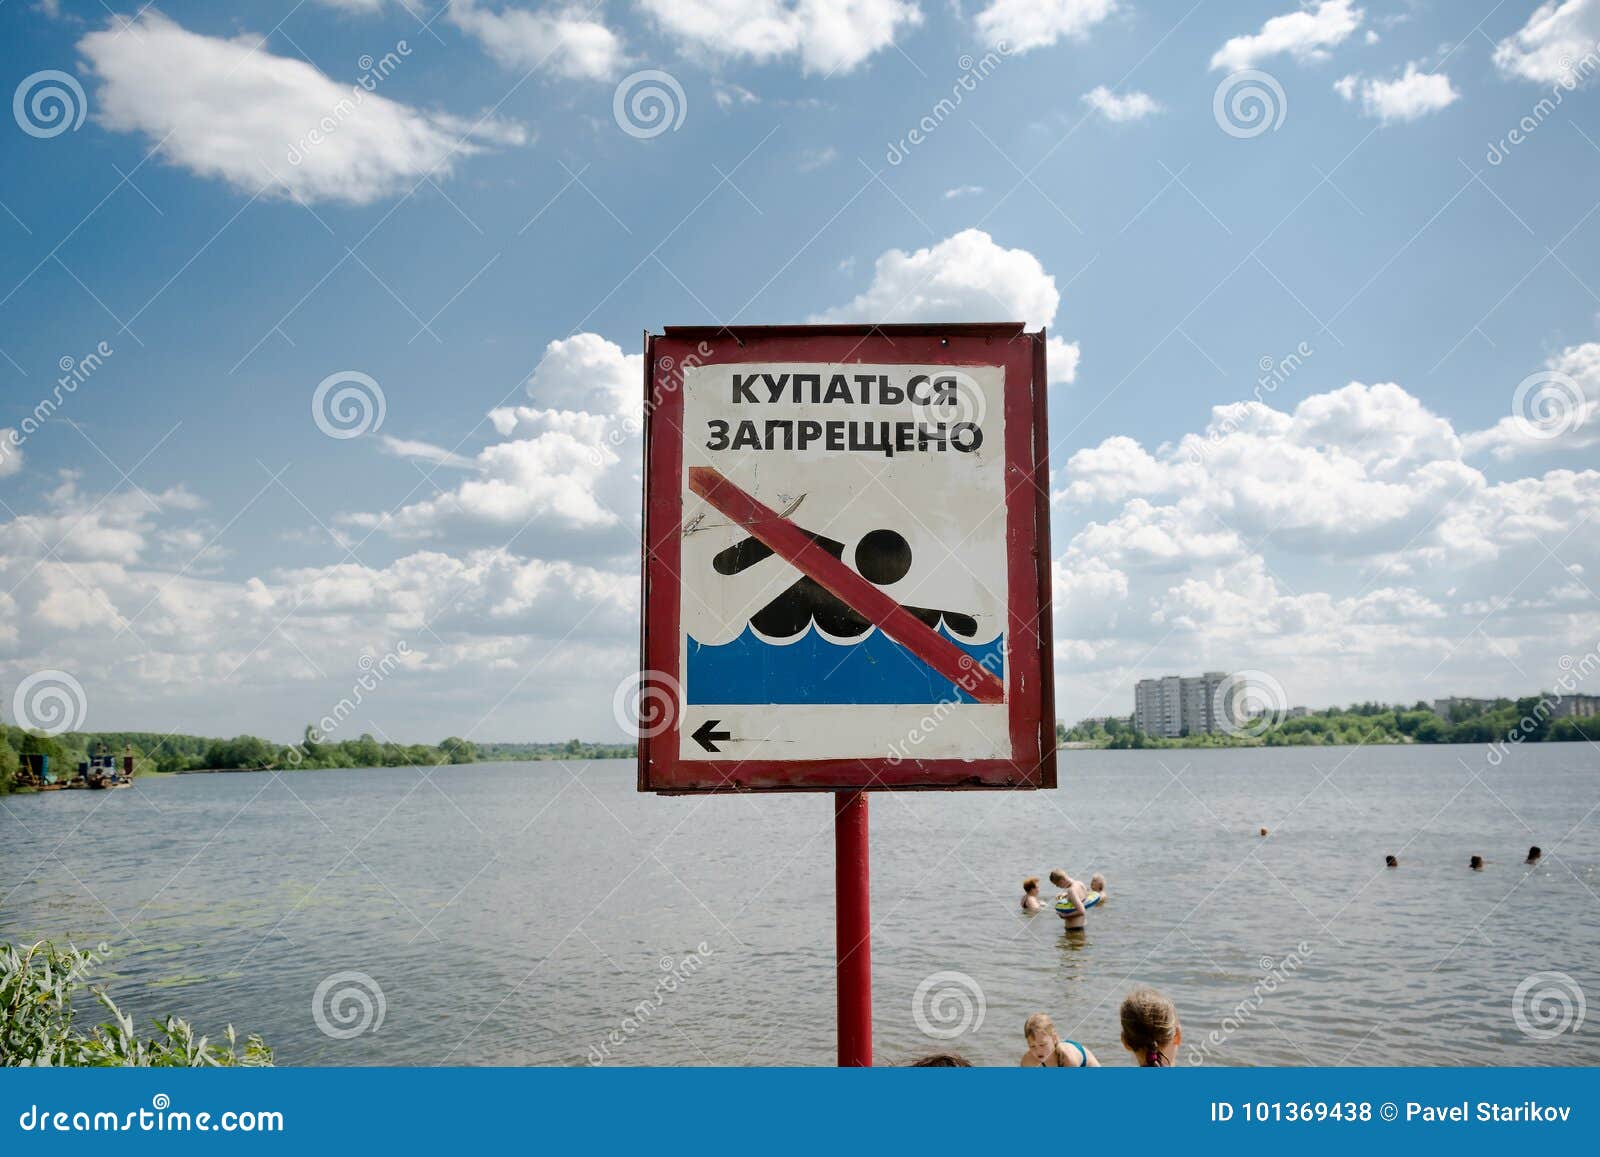 Как написать купаться. Купаться запрещено демотиватор. Наклейка купание запрещено. Знак купание запрещено весит. Шаблон для объявления купание запрещено.